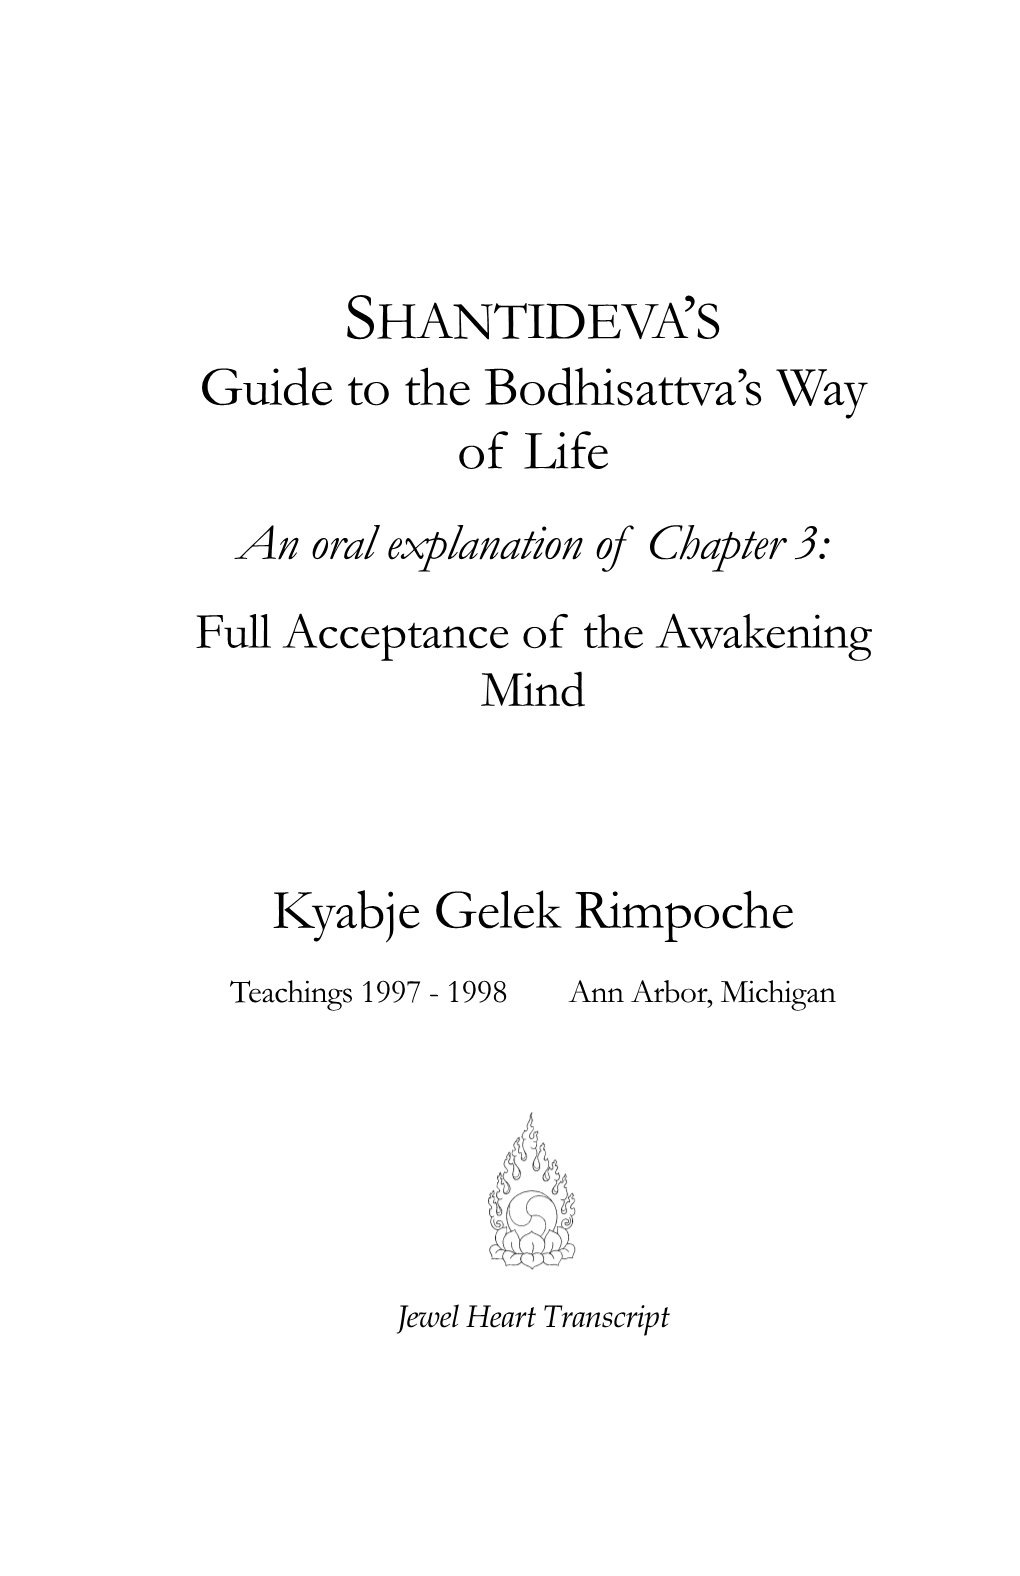 Chapter Iii of Bodhisattvacharyavatara